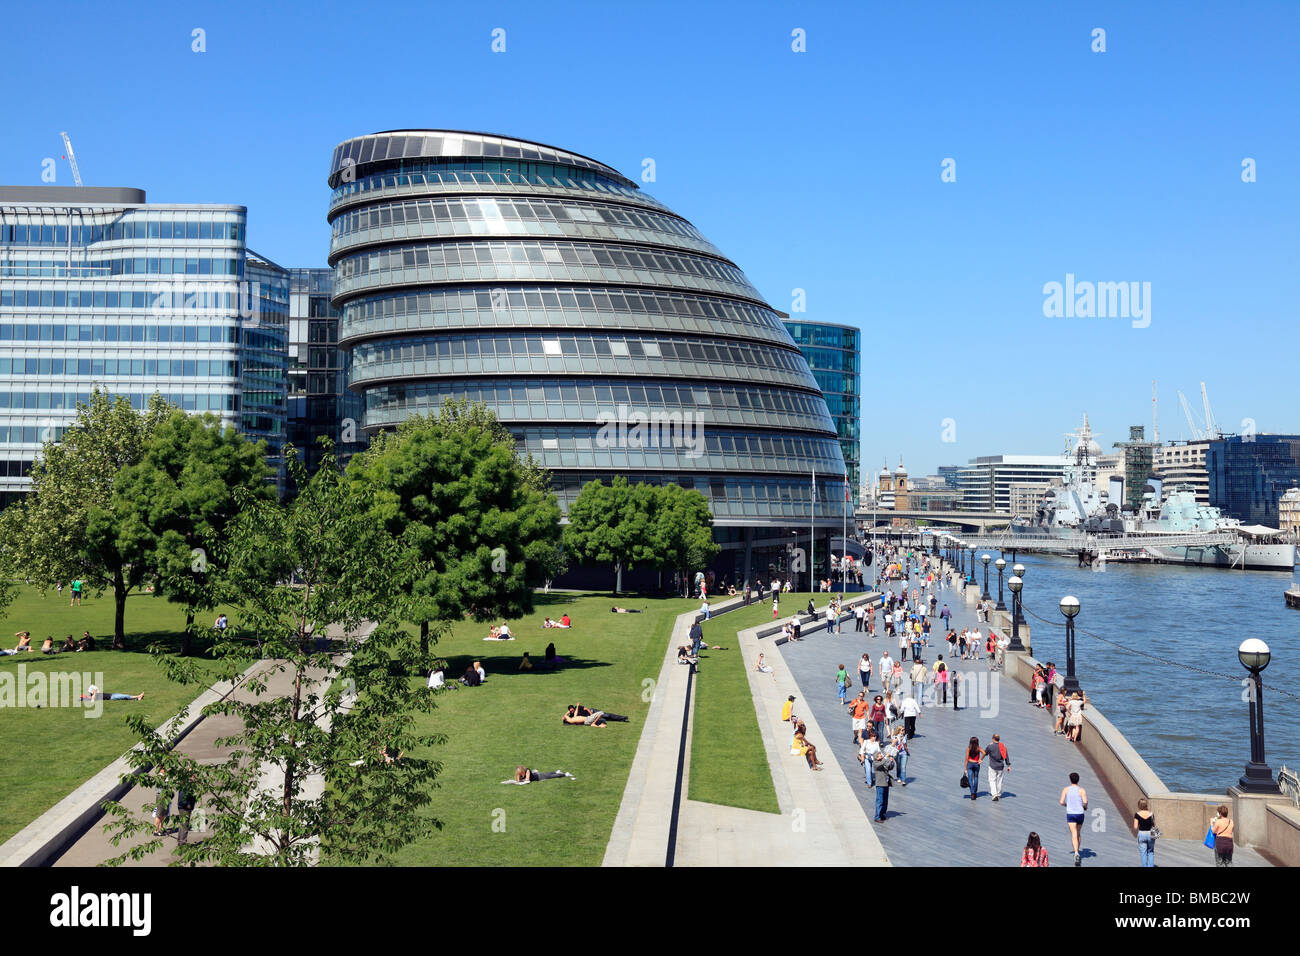 City Hall London das Hauptquartier für die größere London Authority (GLA) und der Bürgermeister von London. Stockfoto